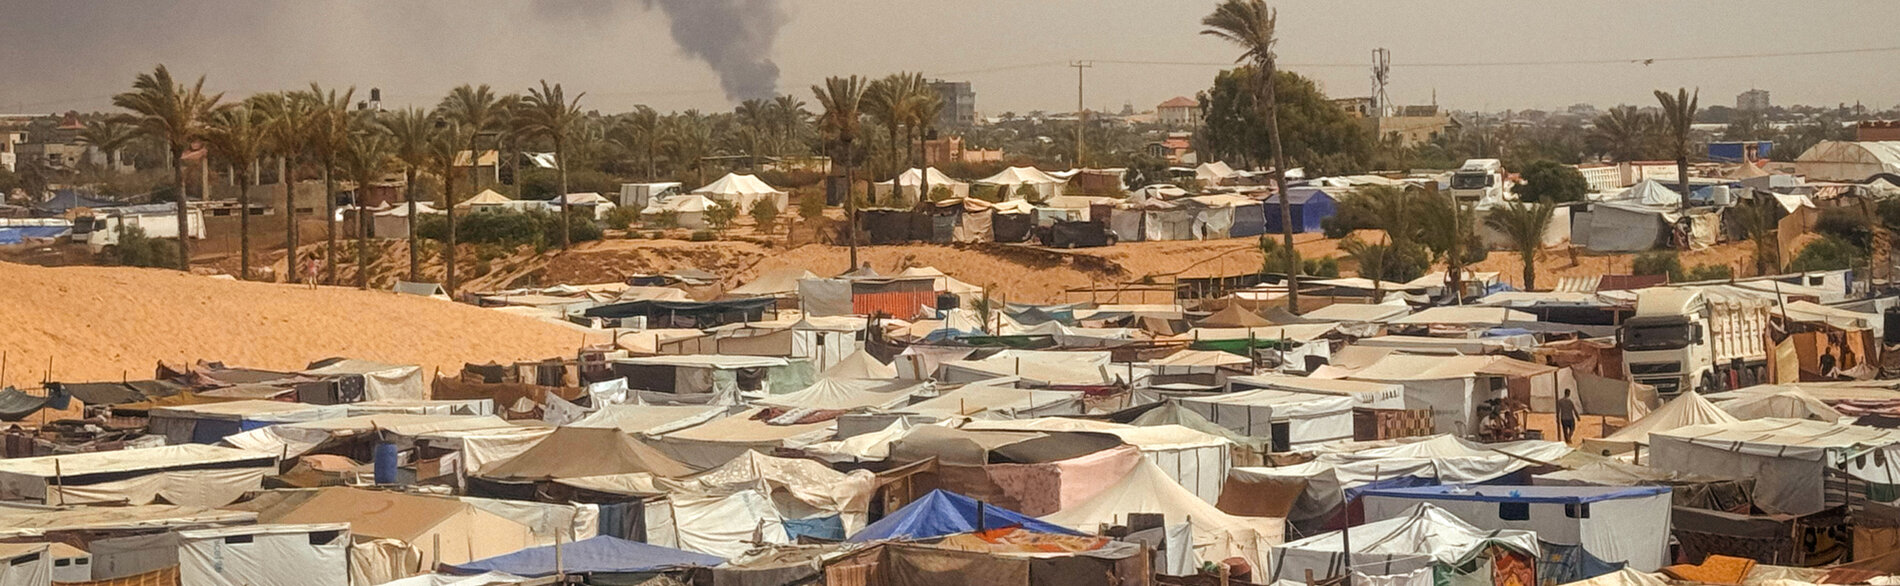 אוהלים מאולתרים של עקורים באל-מוואסי, ח'אן יונס. צילום: משרד האו"ם לתיאום עניינים הומניטריים